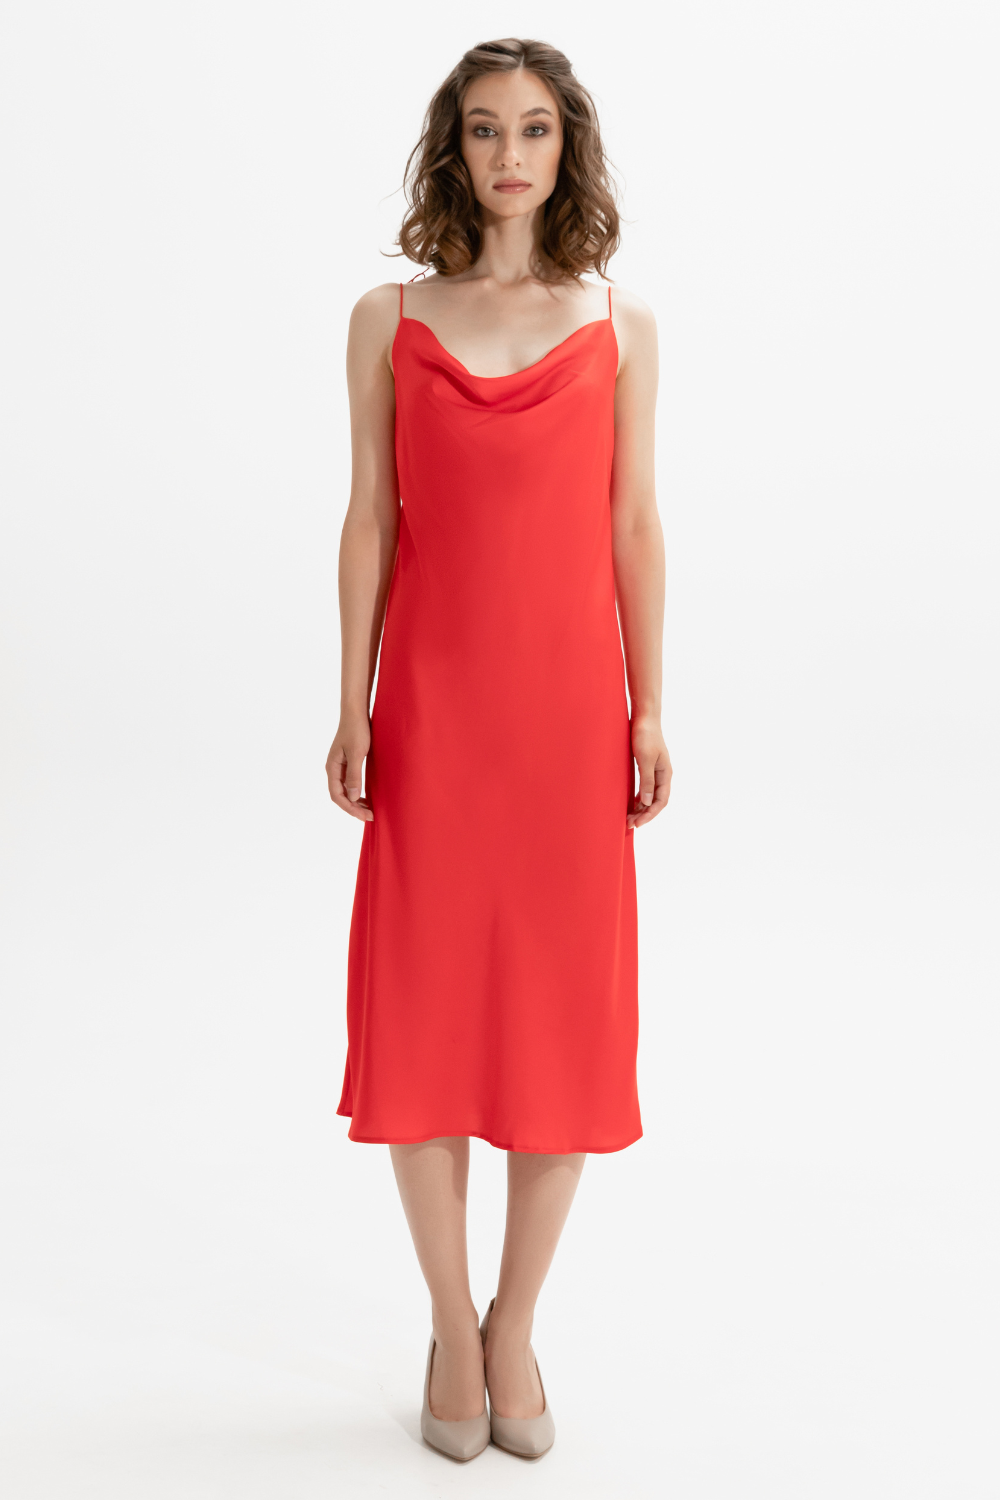 Červené hedvábné šaty s drážkou v oblasti dekoltu (M) (Mint) 821